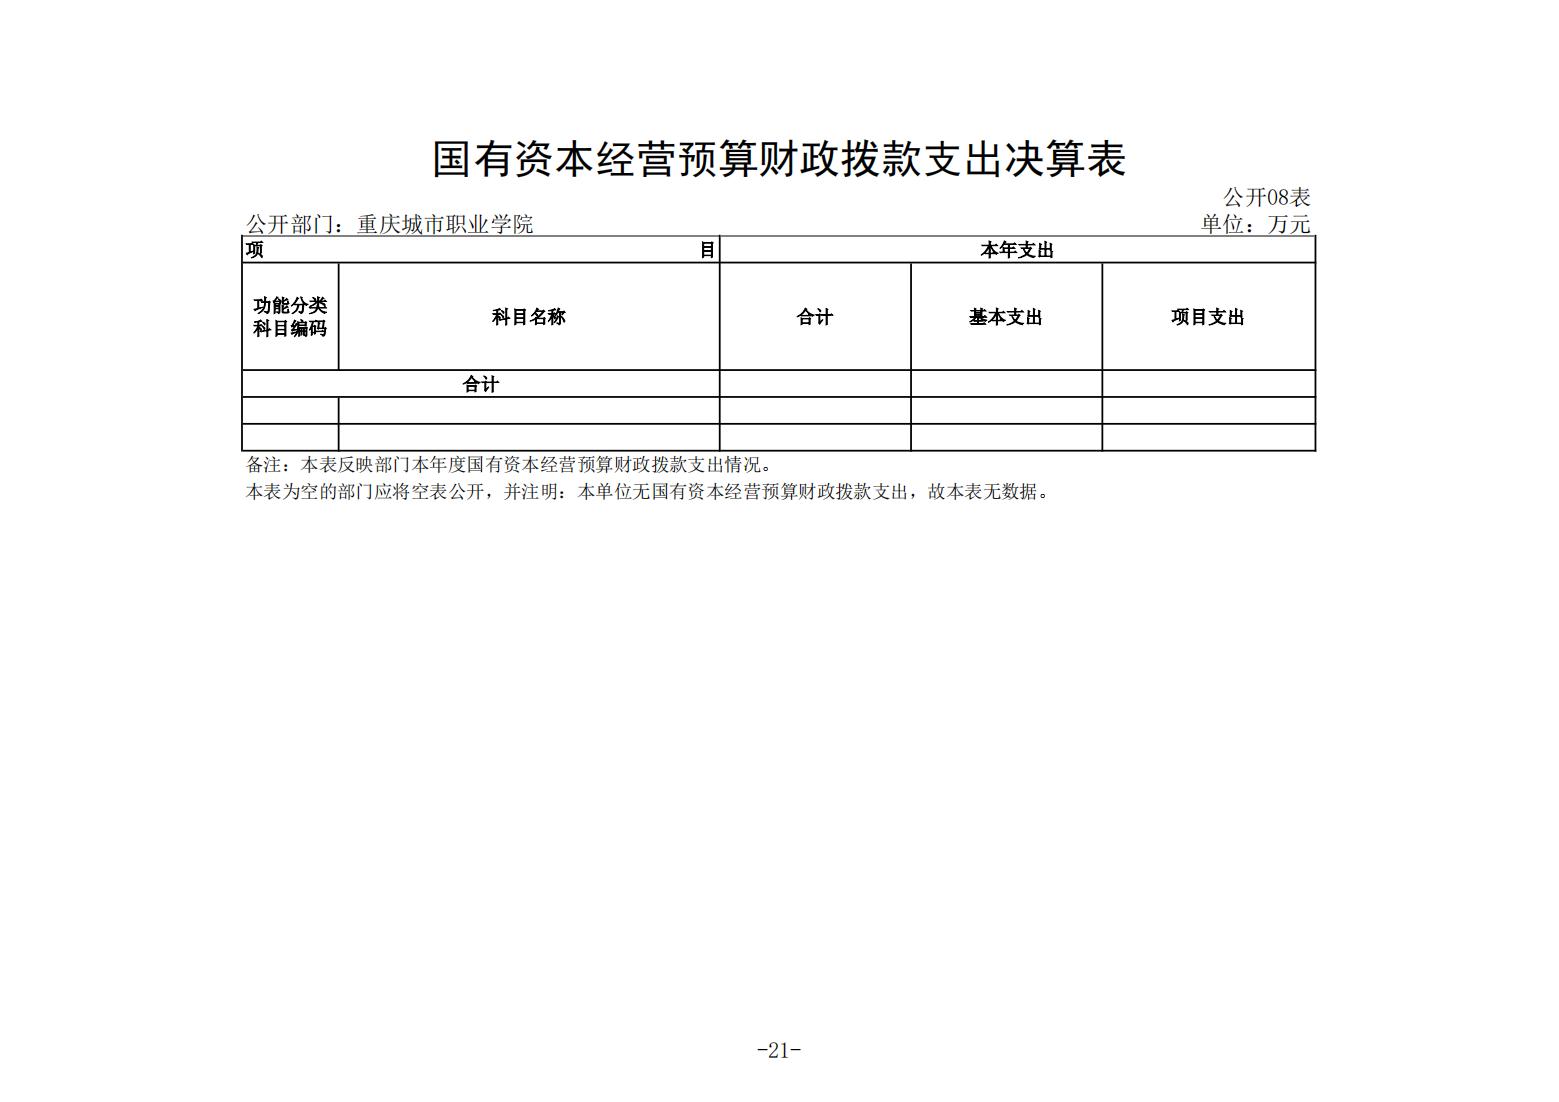 重庆城市职业学院2021年度部门决算情况说明_20.jpg